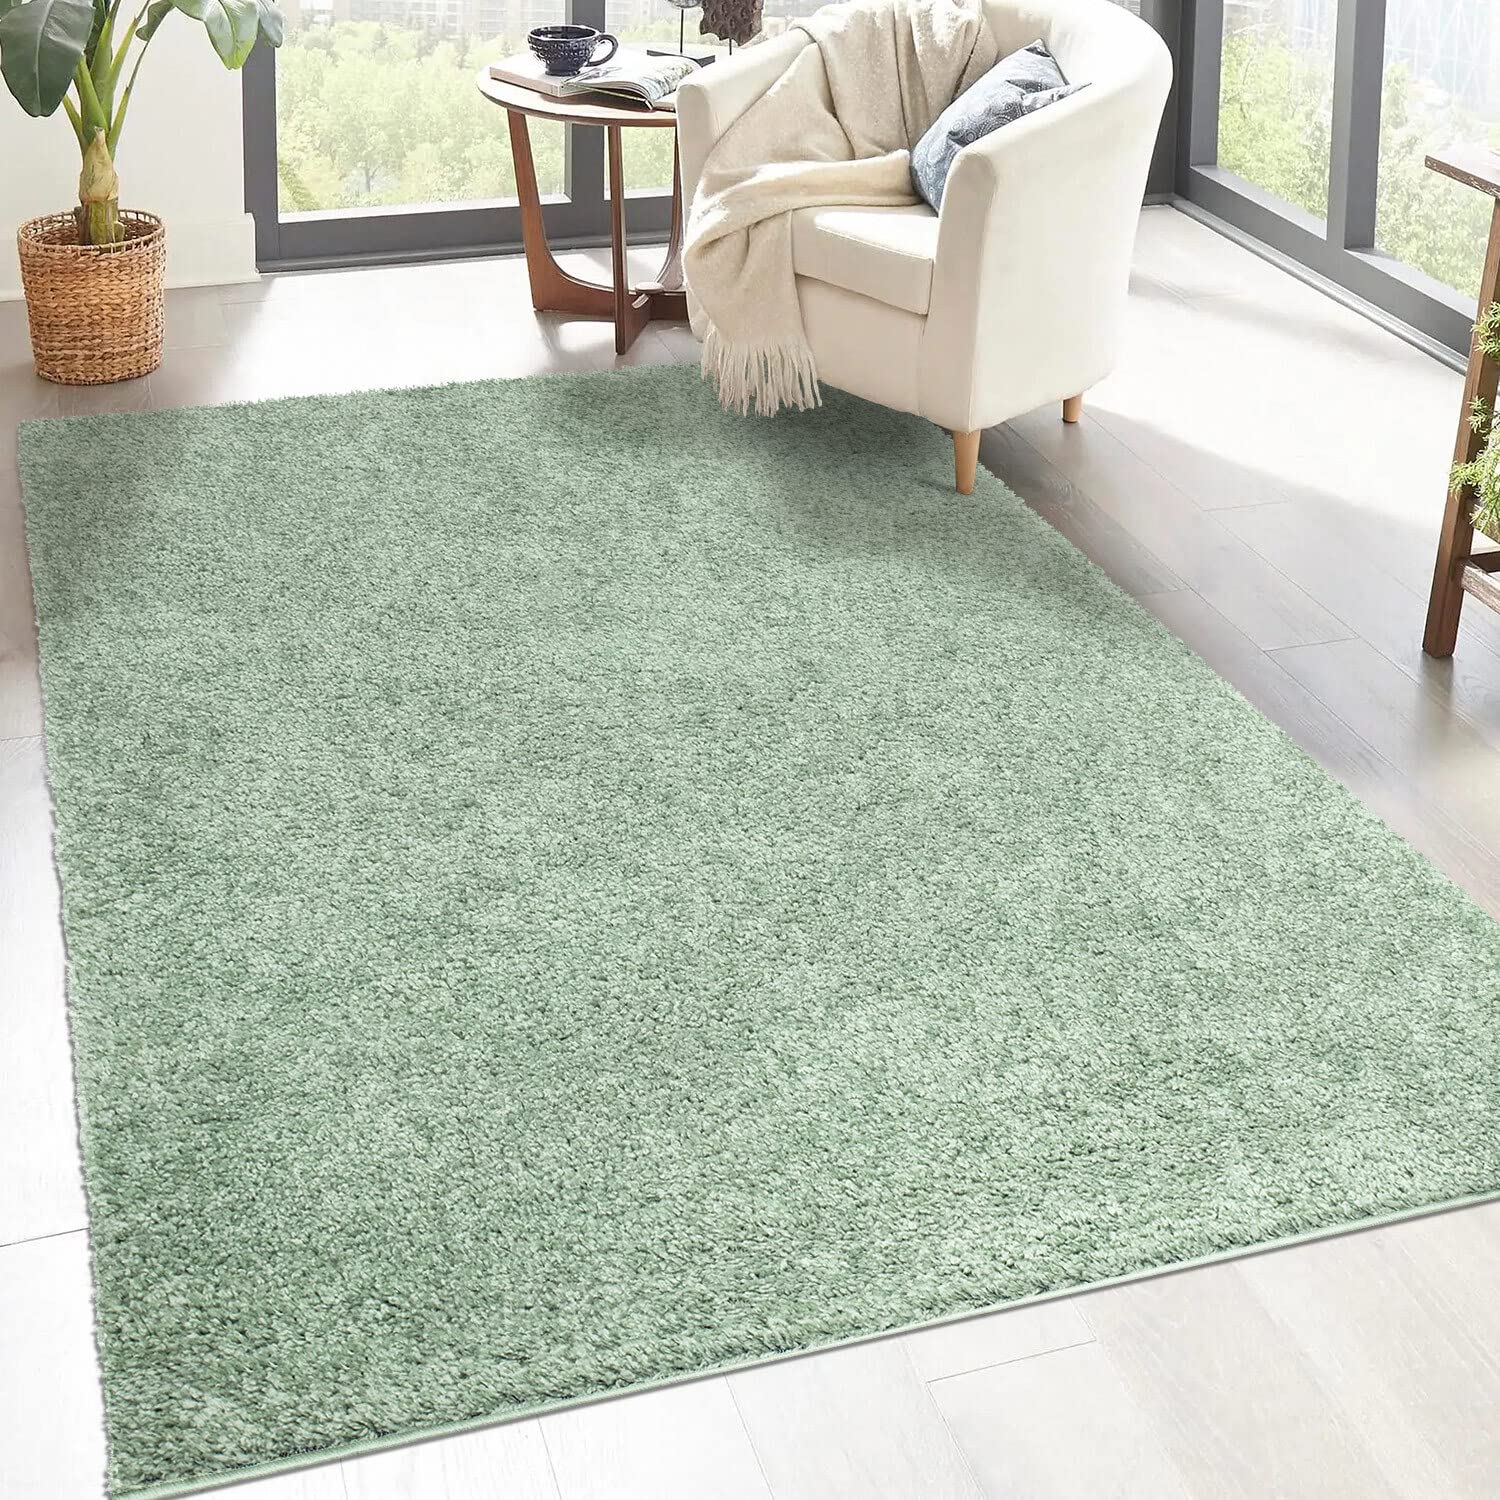 carpet city Shaggy Hochflor Teppich - 150x150 cm Quadratisch - Grün - Langflor Wohnzimmerteppich - Einfarbig Uni Modern - Flauschig-Weiche Teppiche Schlafzimmer Deko